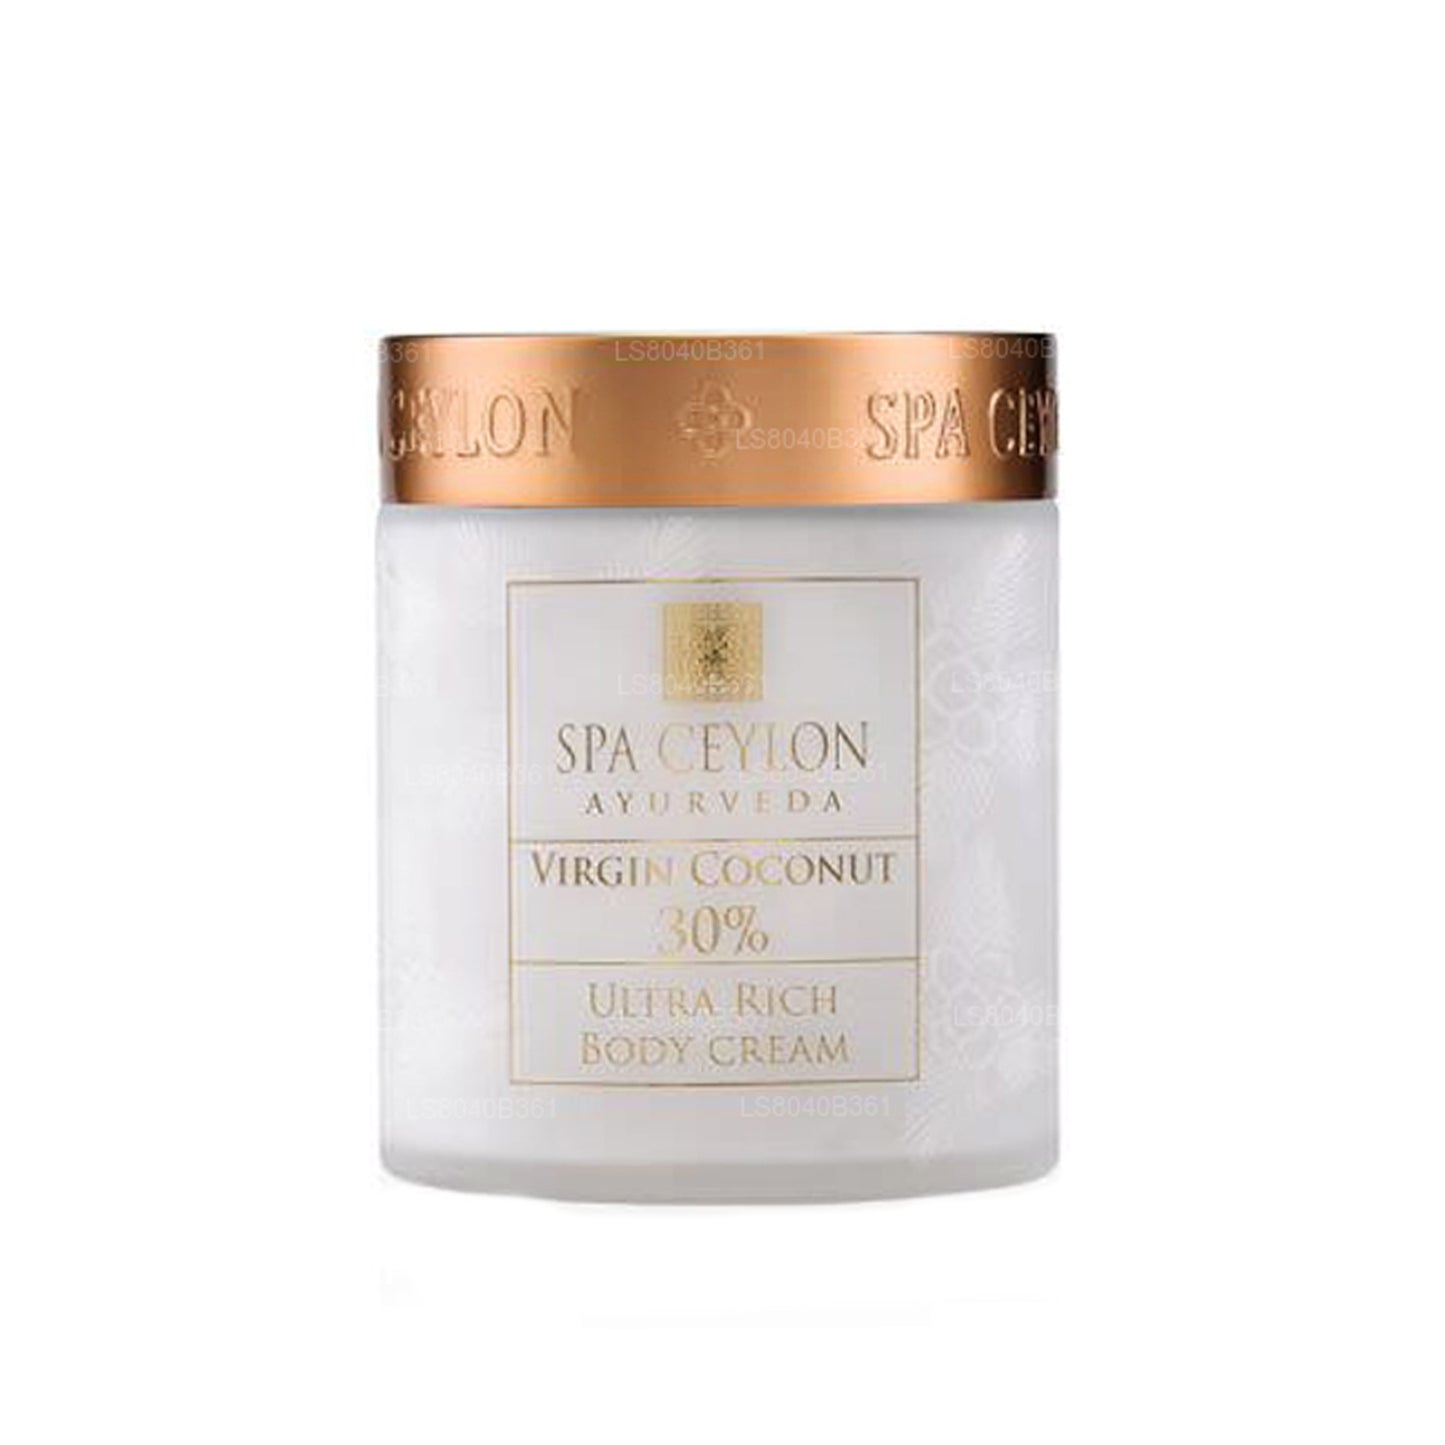 Spa Ceylon Virgin Coconut 30% - Crema corpo ultra ricca (200 g)